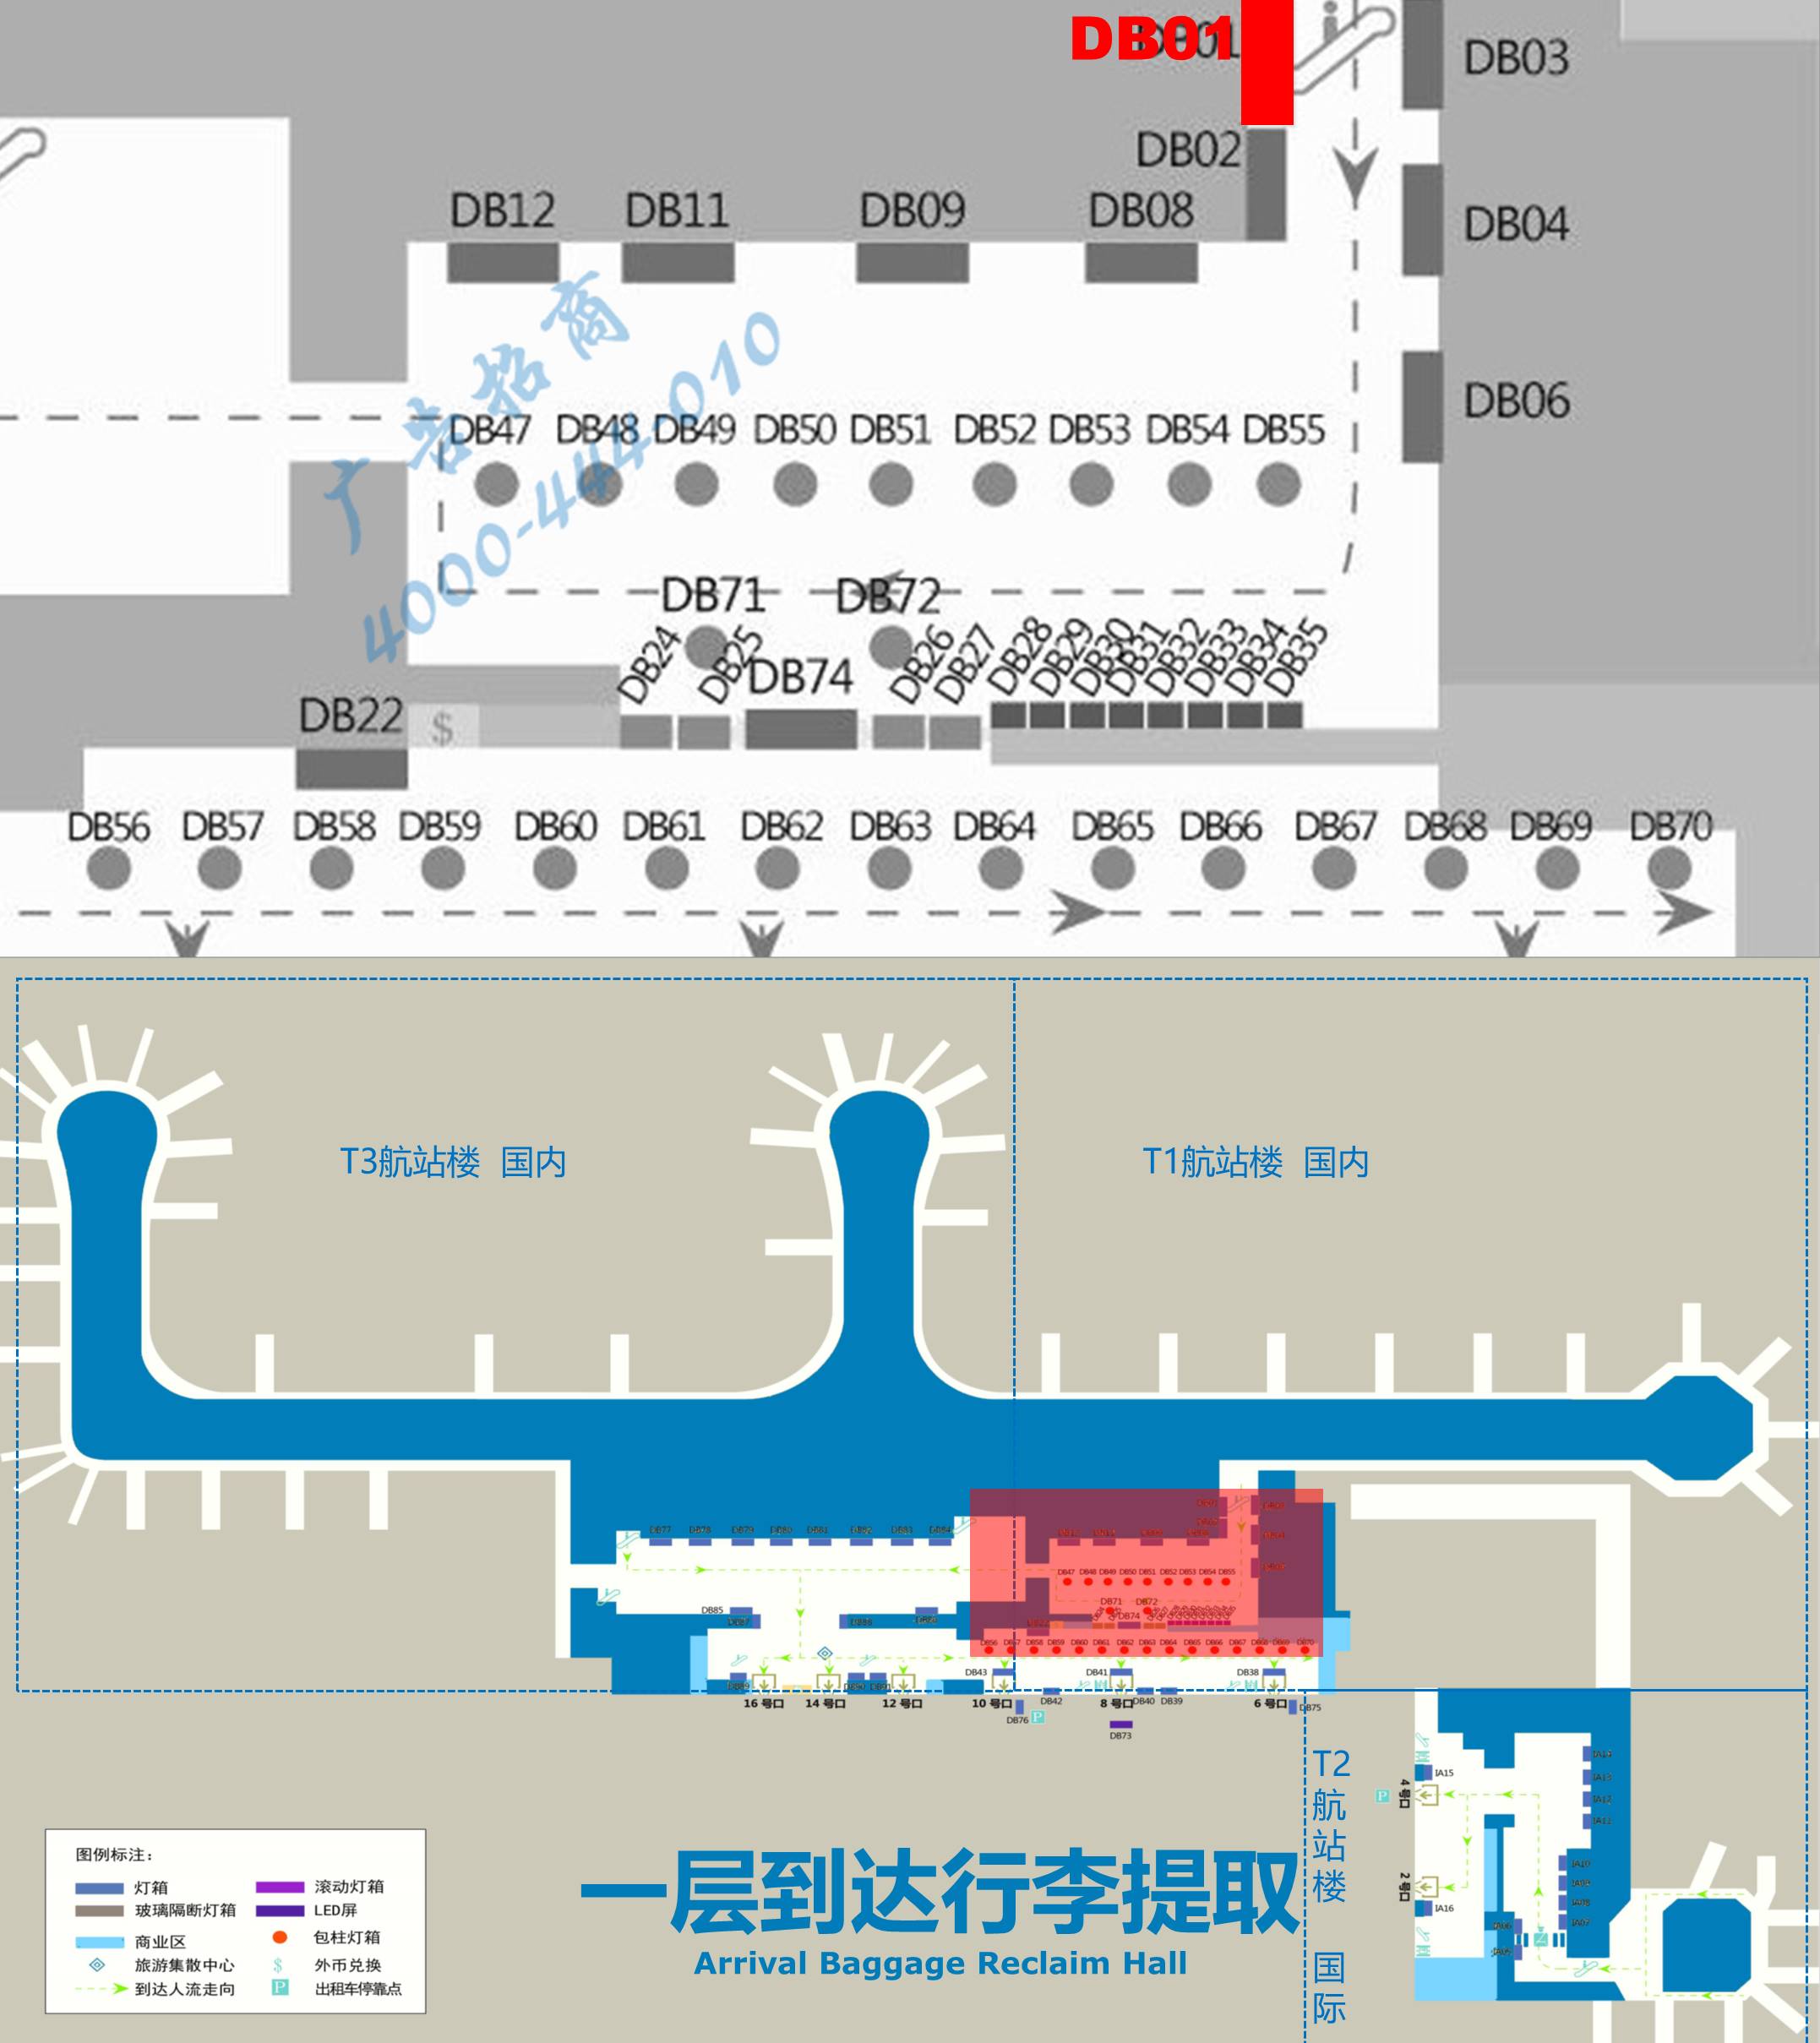 杭州萧山机场广告-T1到达自动扶梯旁灯箱DB01位置图